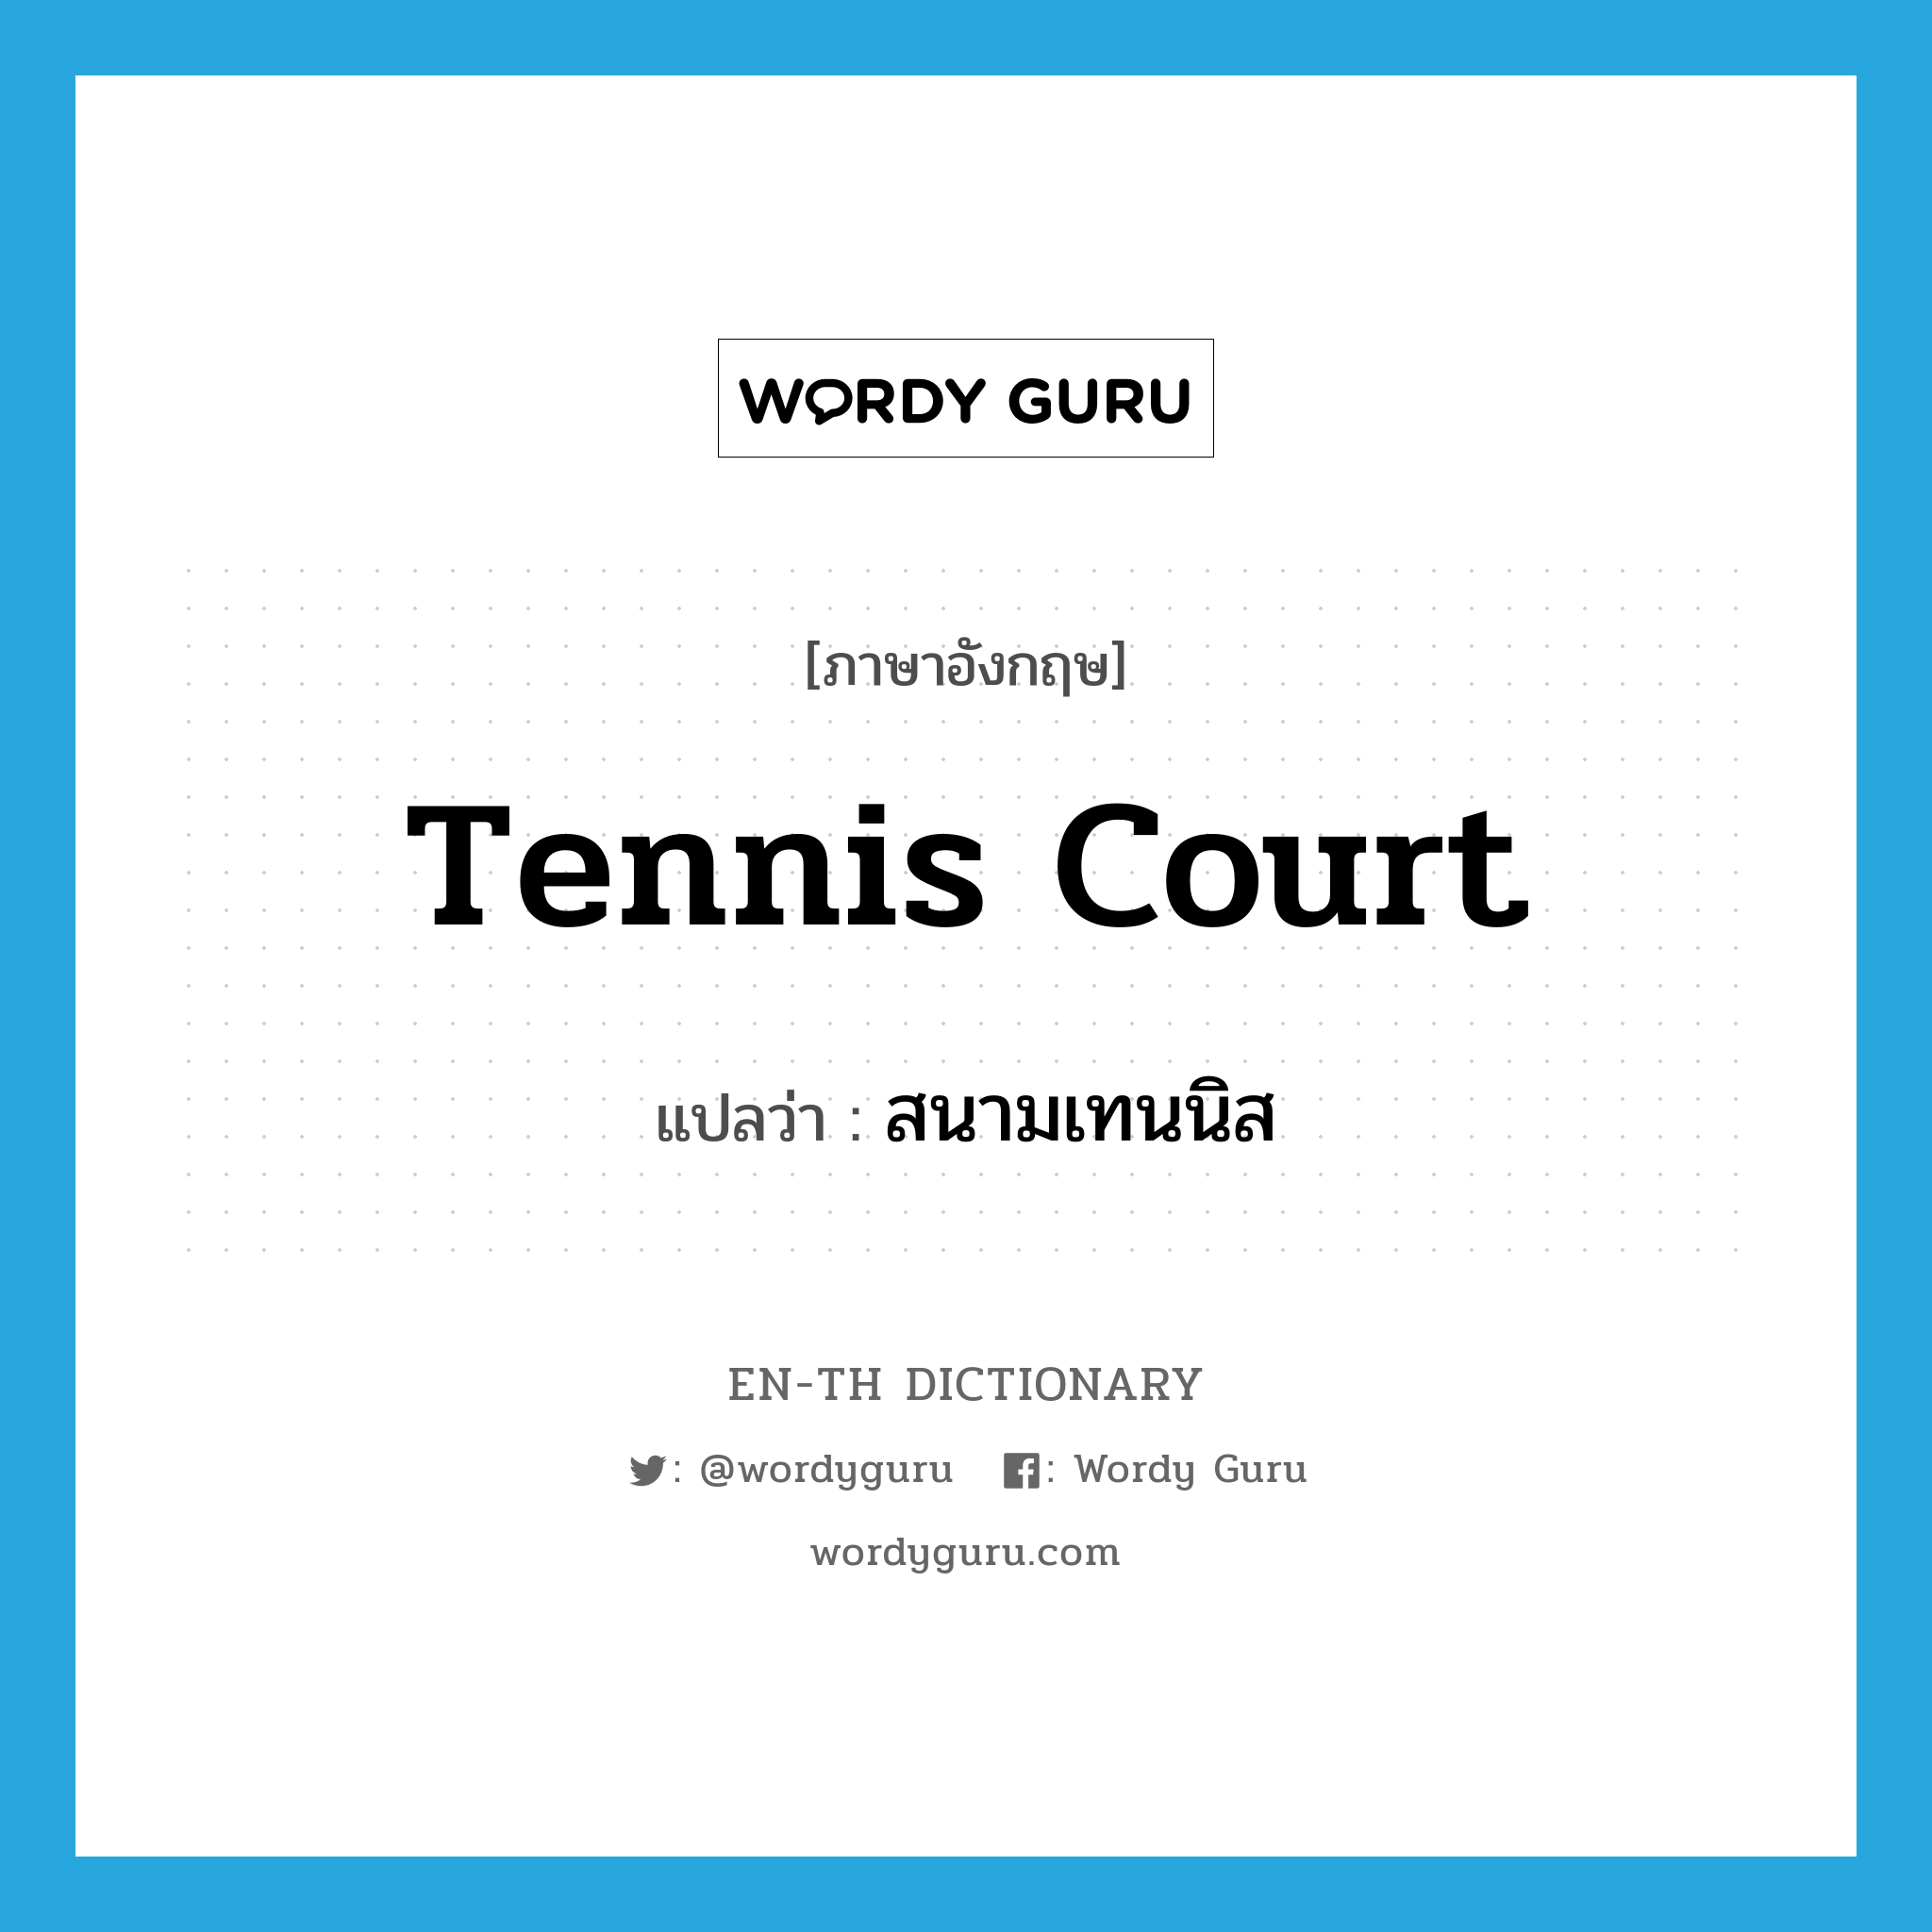 tennis court แปลว่า?, คำศัพท์ภาษาอังกฤษ tennis court แปลว่า สนามเทนนิส ประเภท N หมวด N